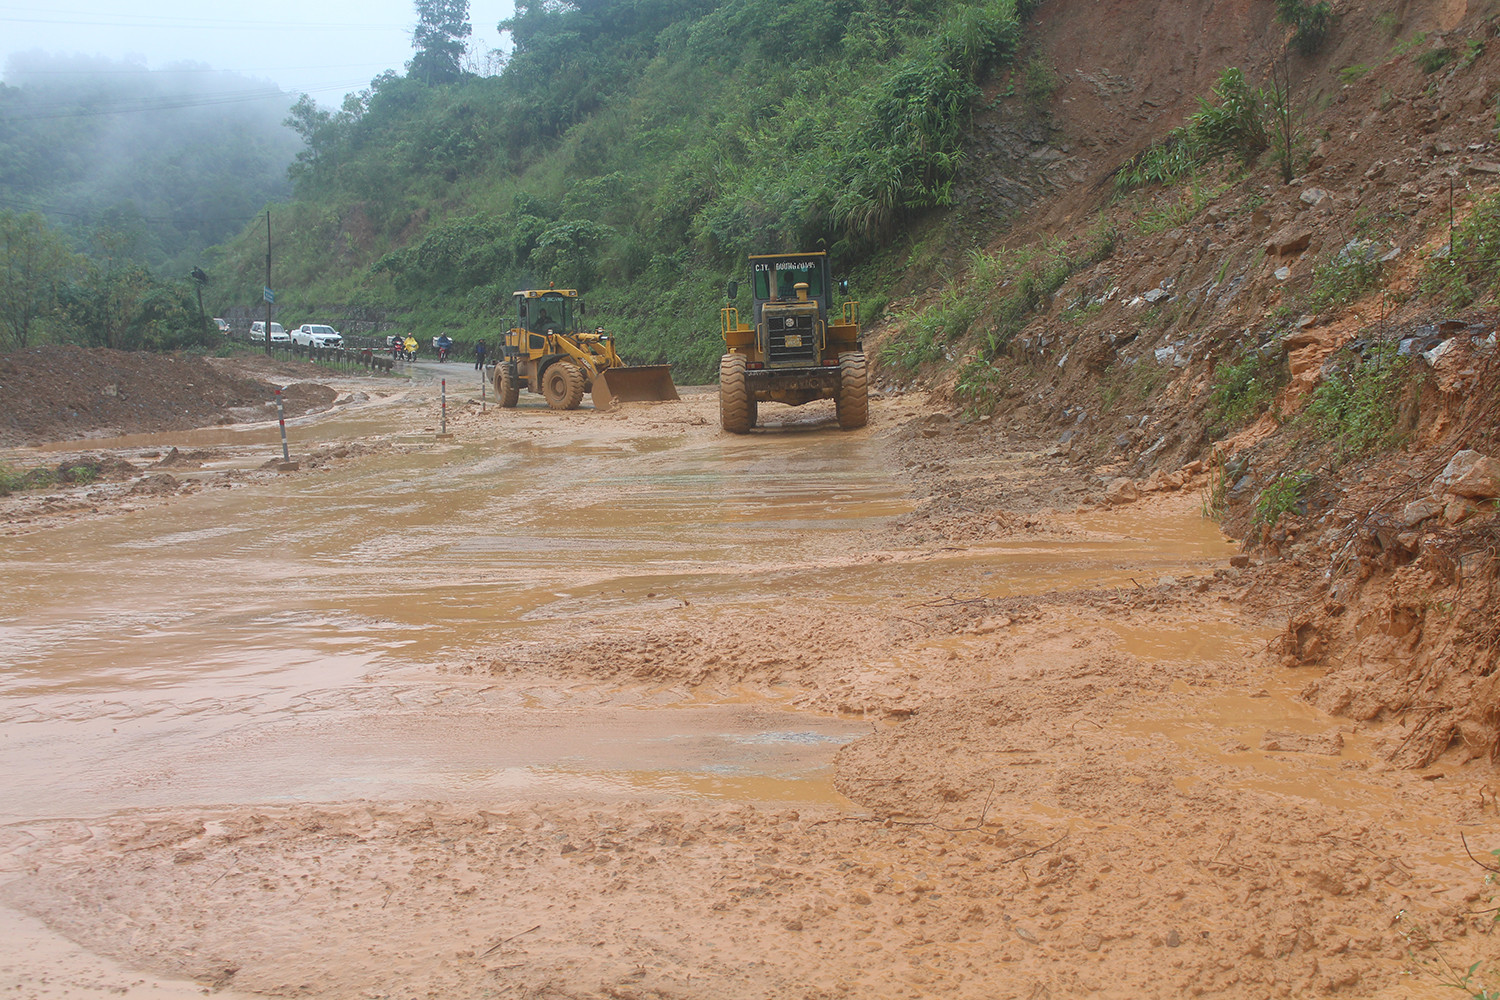 Huyện Con Cuông đã huy động 2 máy xúc để san gạt đất đá trên tuyến đường này. Ảnh: Bảo Hân